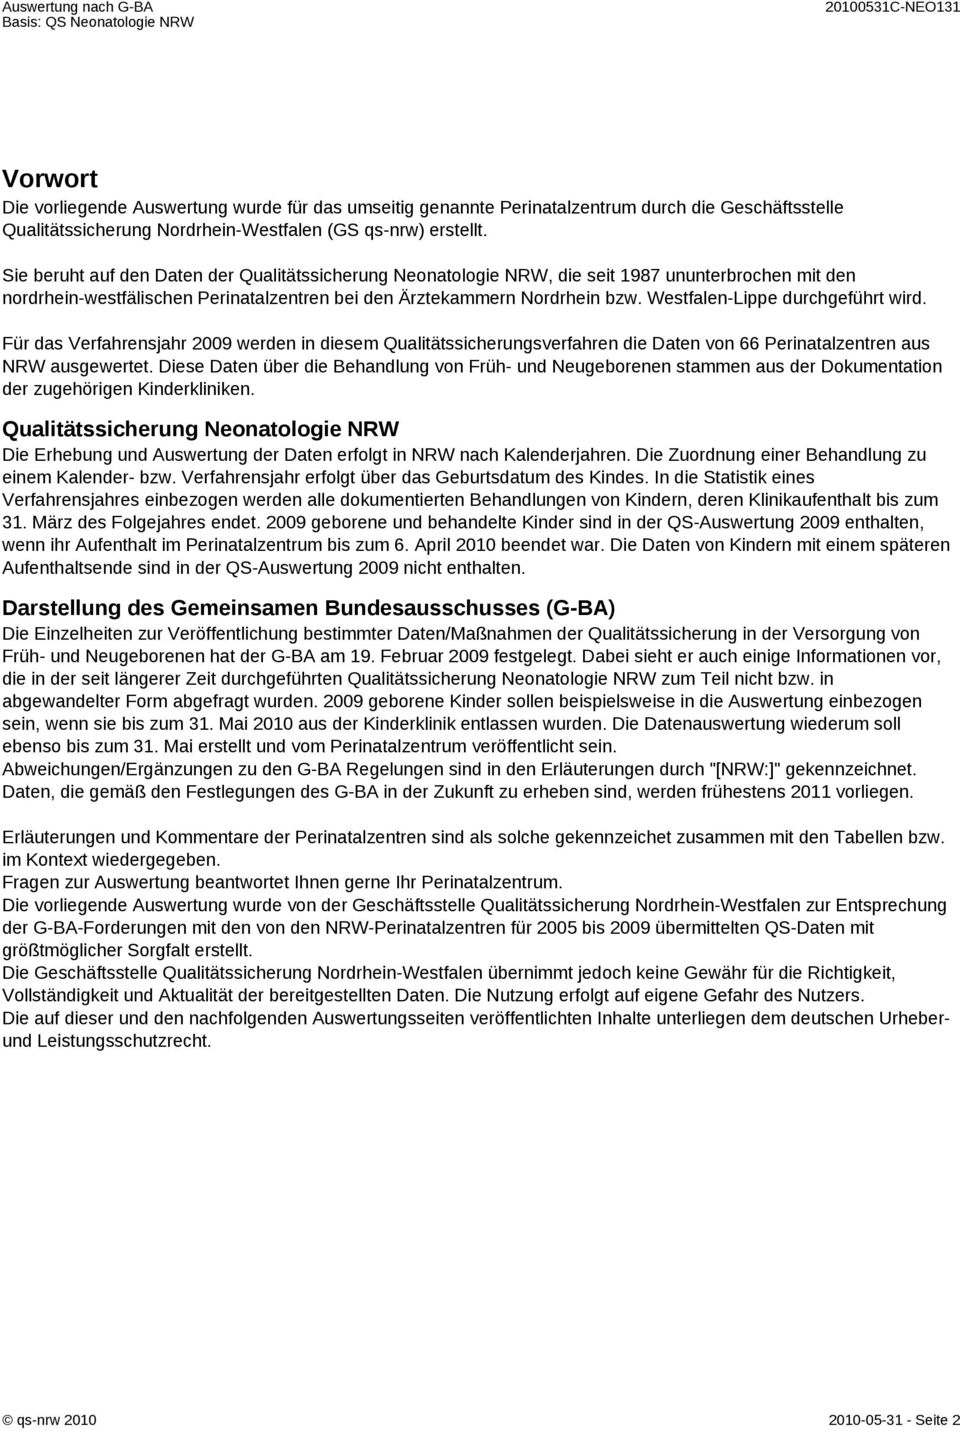 Westfalen-Lippe durchgeführt wird. Für das Verfahrensjahr 2009 werden in diesem Qualitätssicherungsverfahren die Daten von 66 Perinatalzentren aus NRW ausgewertet.